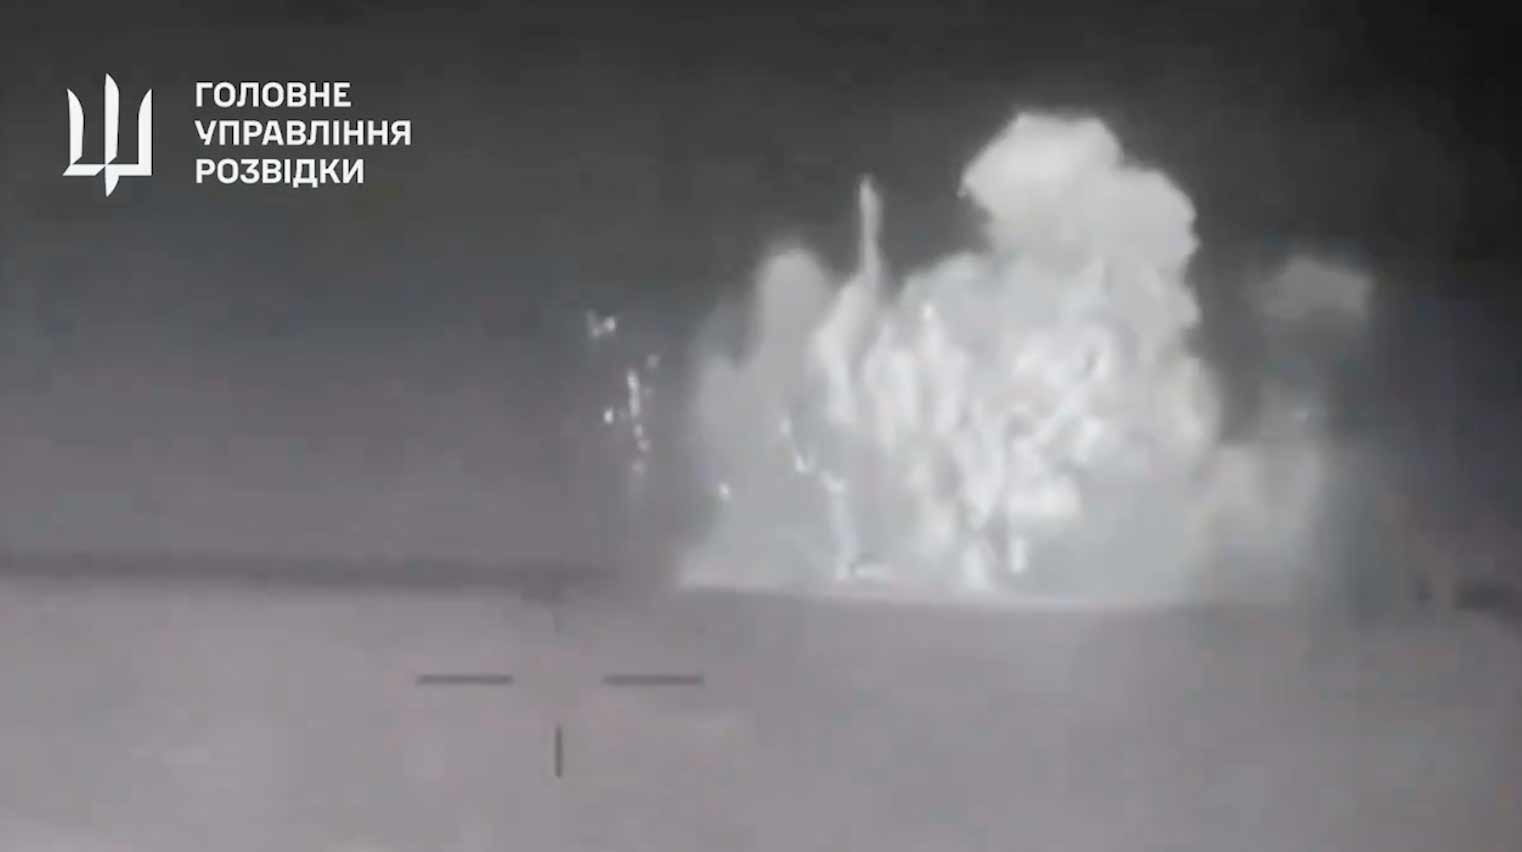 새로운 비디오가 러시아 선박 세르게이 코토프를 침몰시킨 폭발을 보여줍니다. Twitter @wartranslated 재현